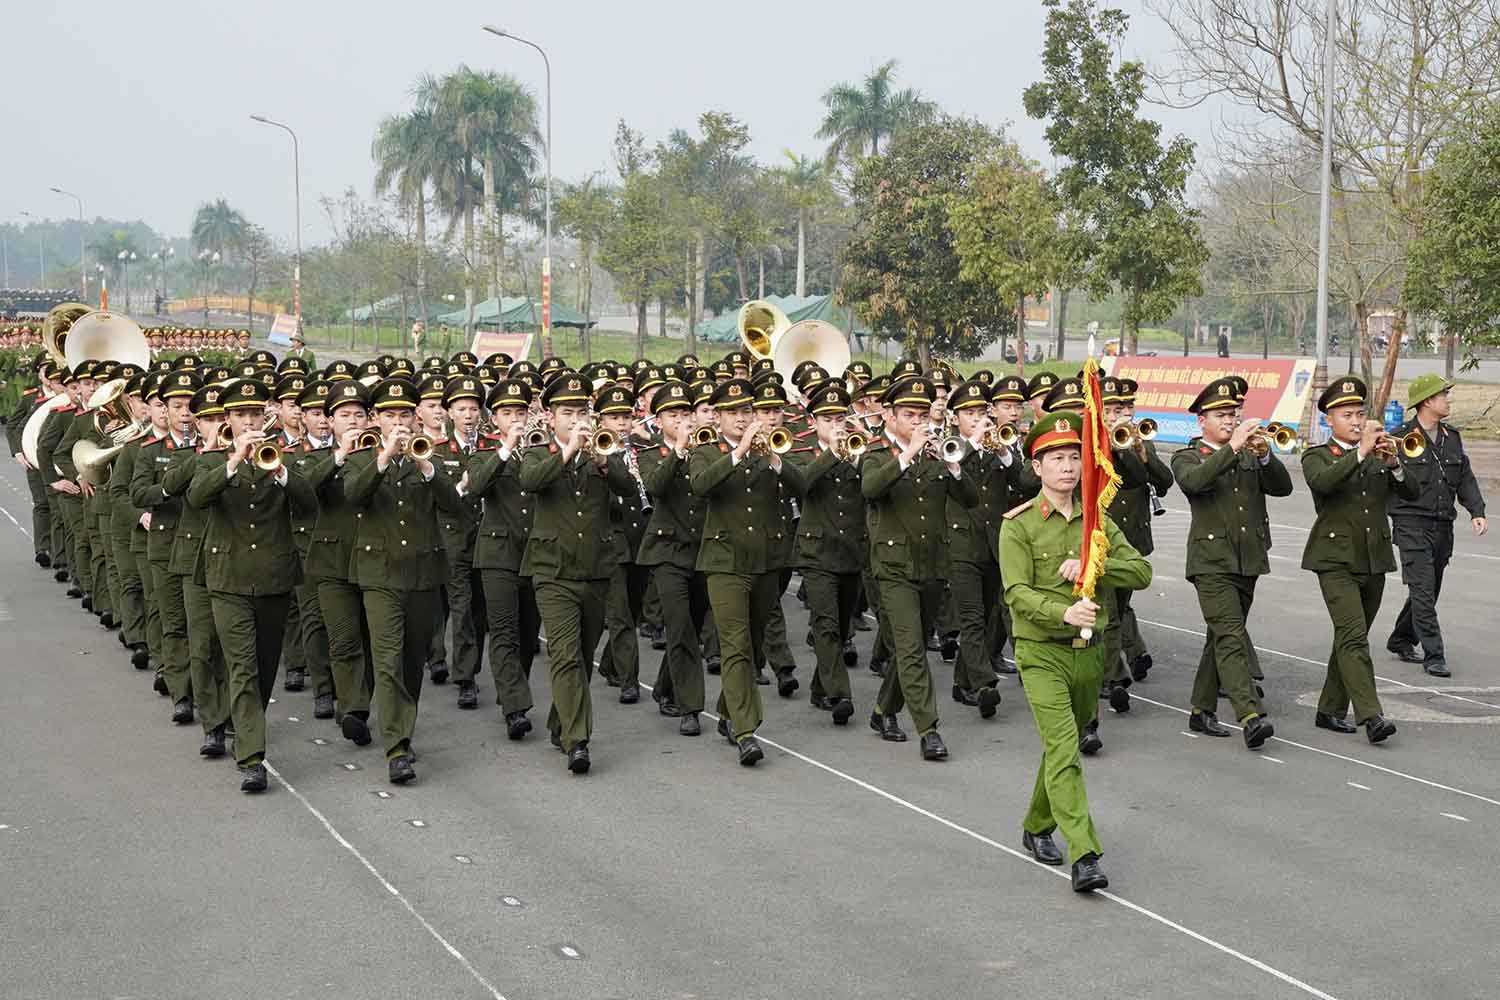 Xe mang hình Quốc kỳ dẫn đầu đoàn diễu hành qua lễ đài.